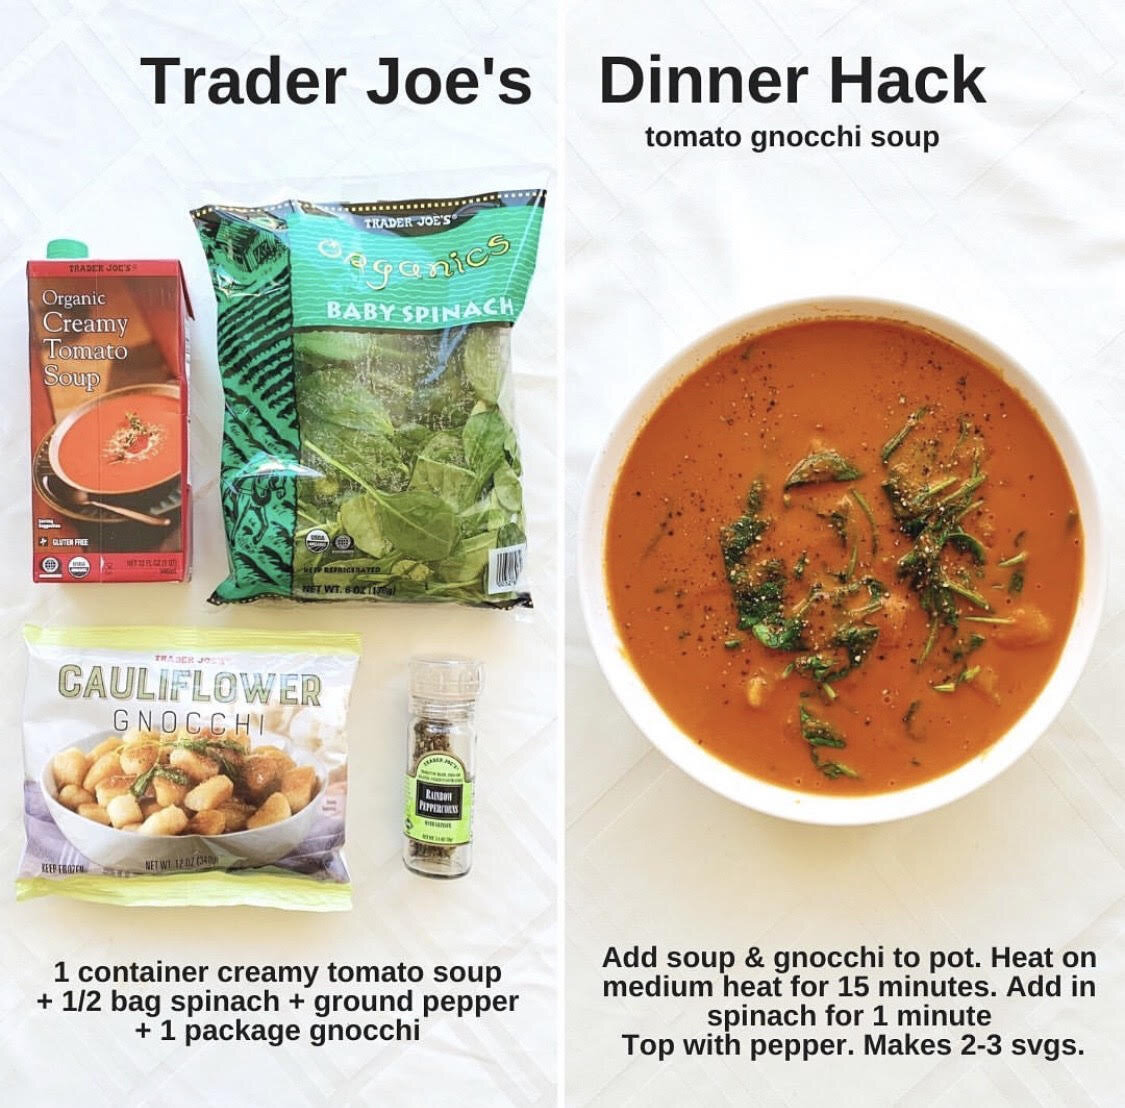 Trader Joe's Dinner Hacks Soups